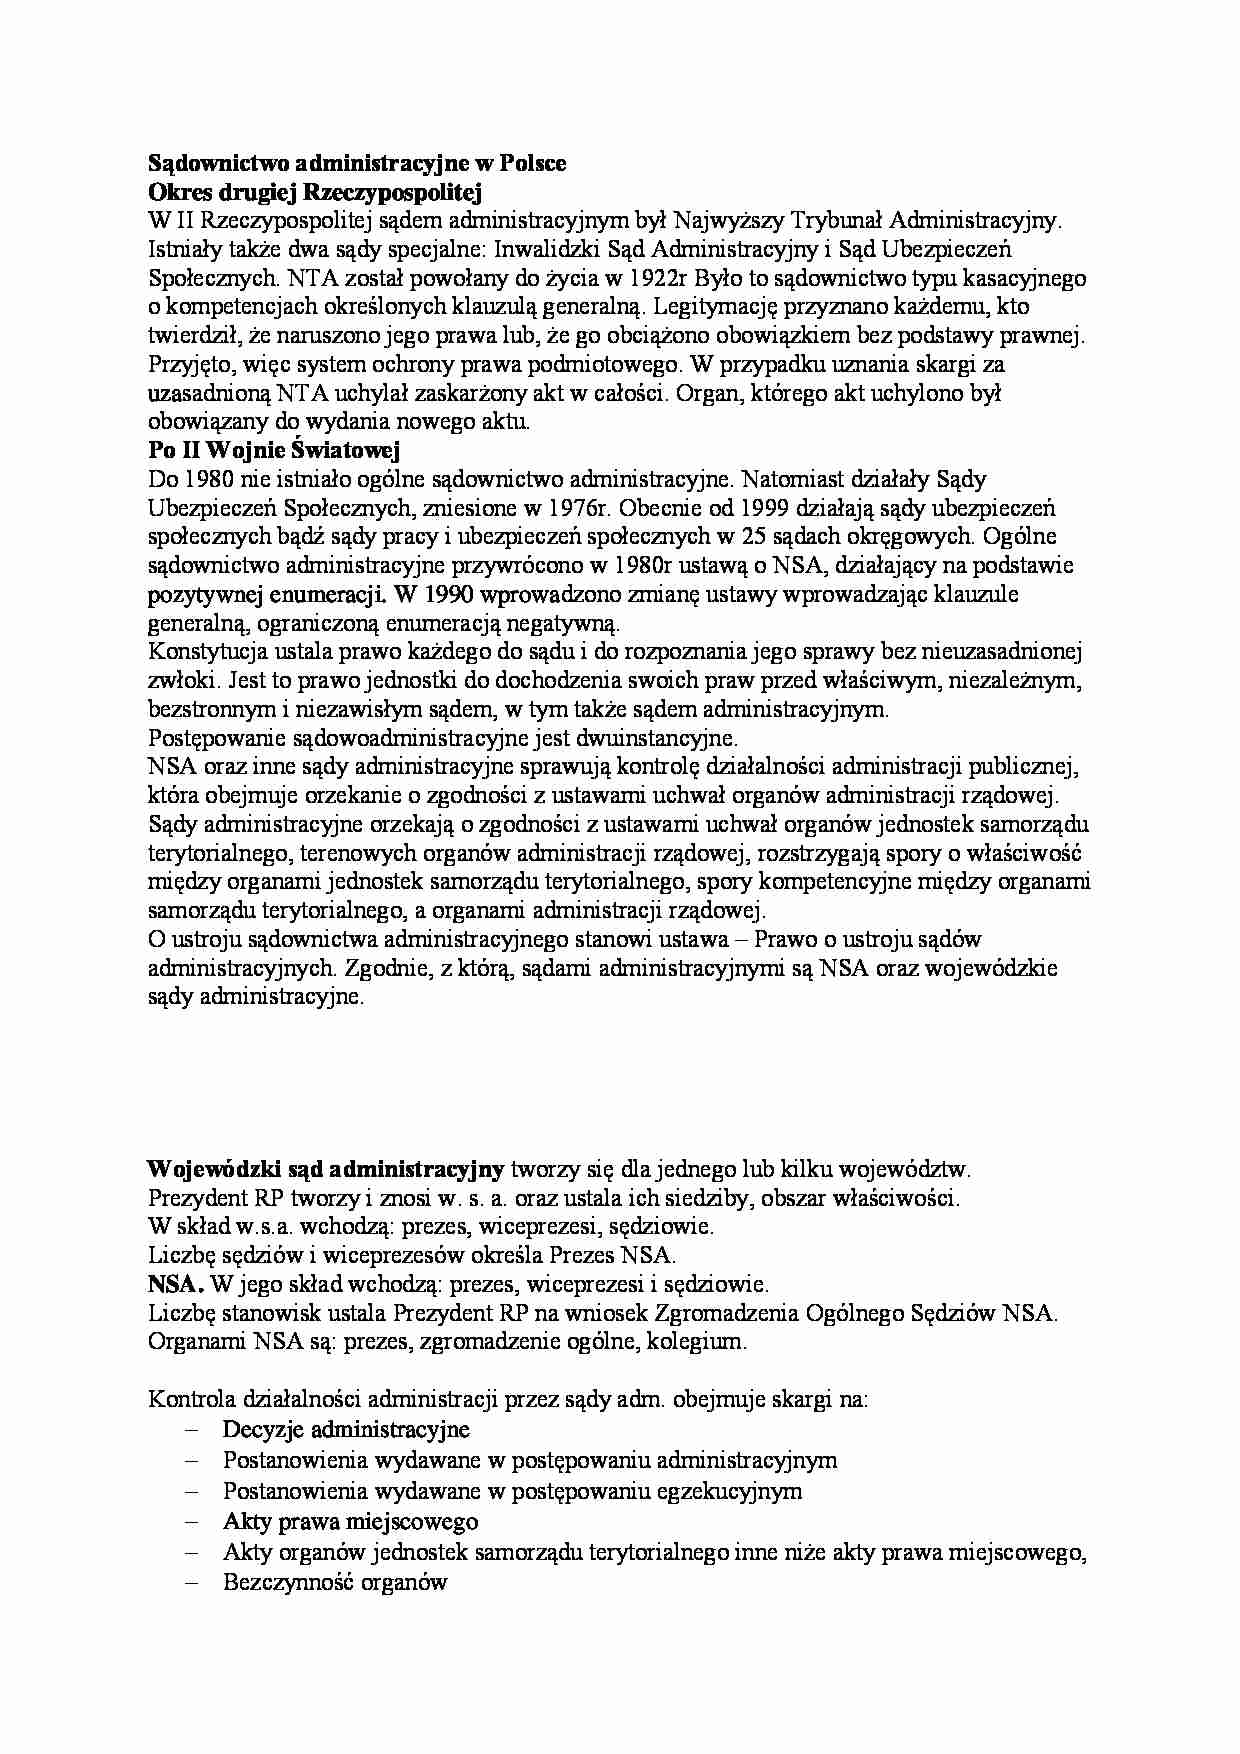 Sądownictwo administracyjne w Polsce - strona 1